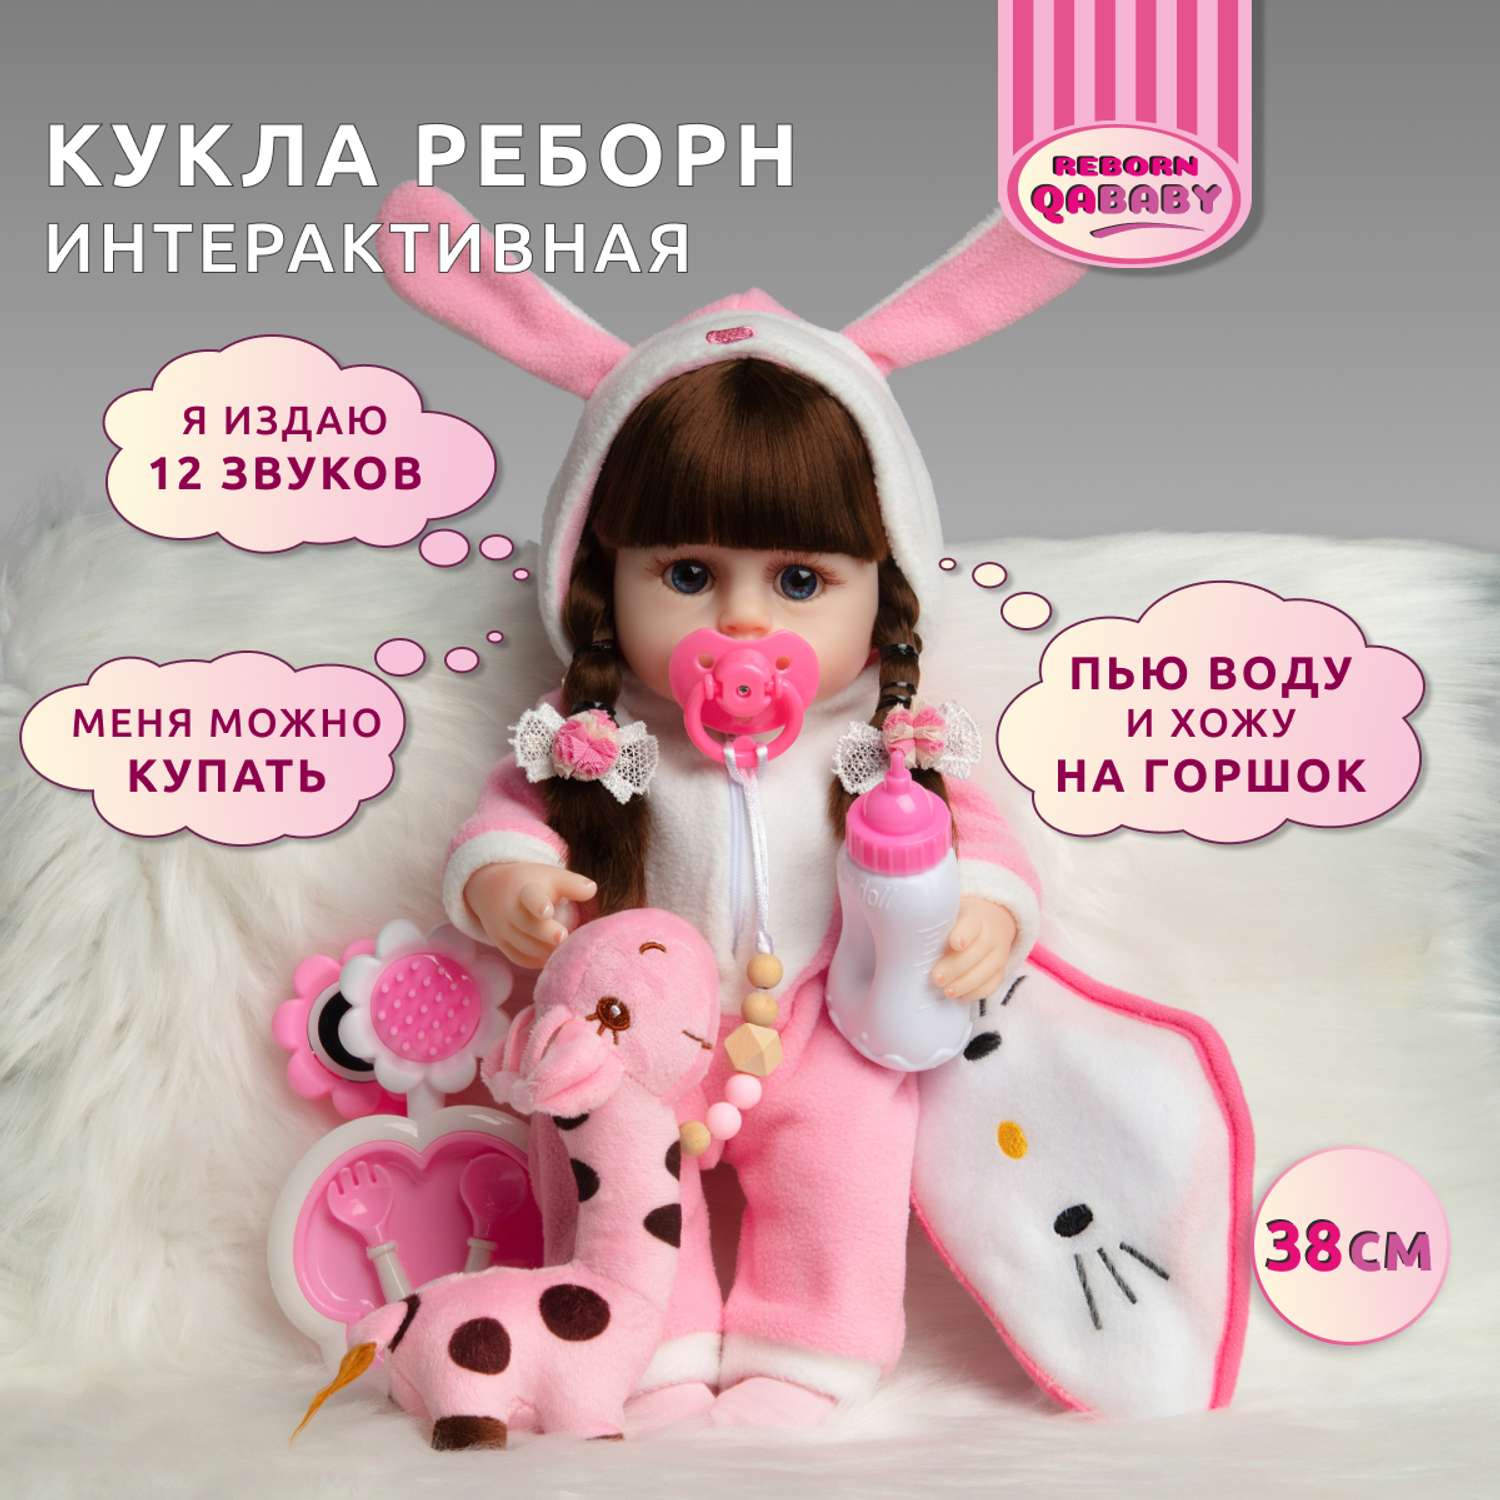 Кукла Реборн QA BABY Яна девочка интерактивная Пупс набор игрушки для ванной для девочки 38 см 3812 - фото 1